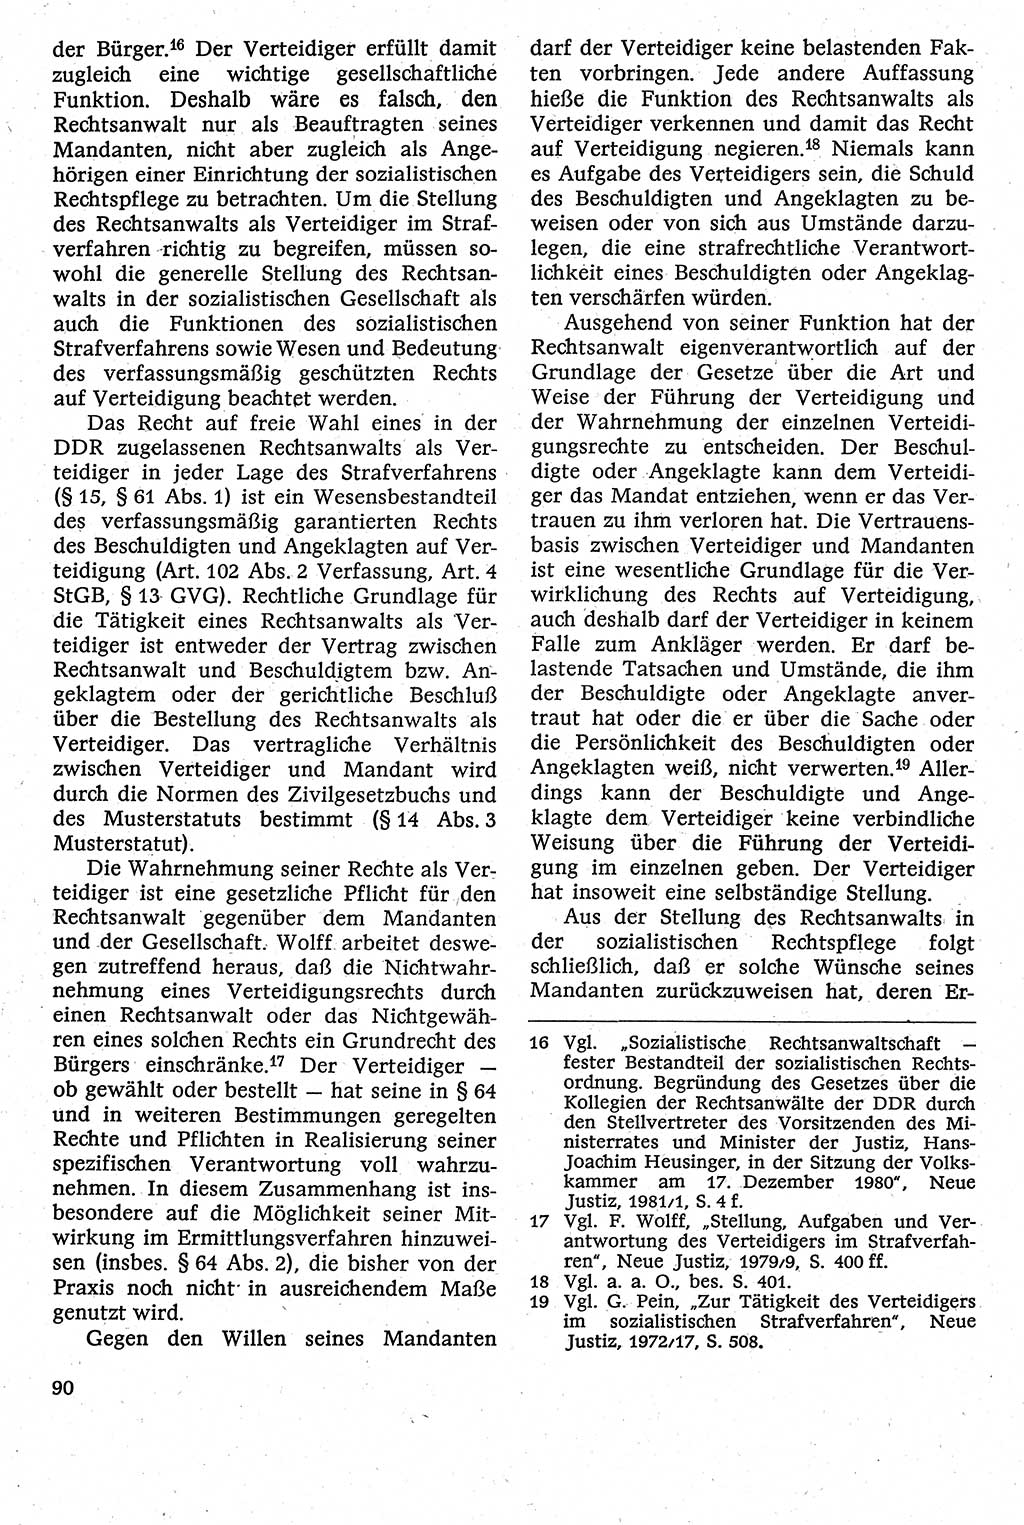 Strafverfahrensrecht [Deutsche Demokratische Republik (DDR)], Lehrbuch 1982, Seite 90 (Strafverf.-R. DDR Lb. 1982, S. 90)